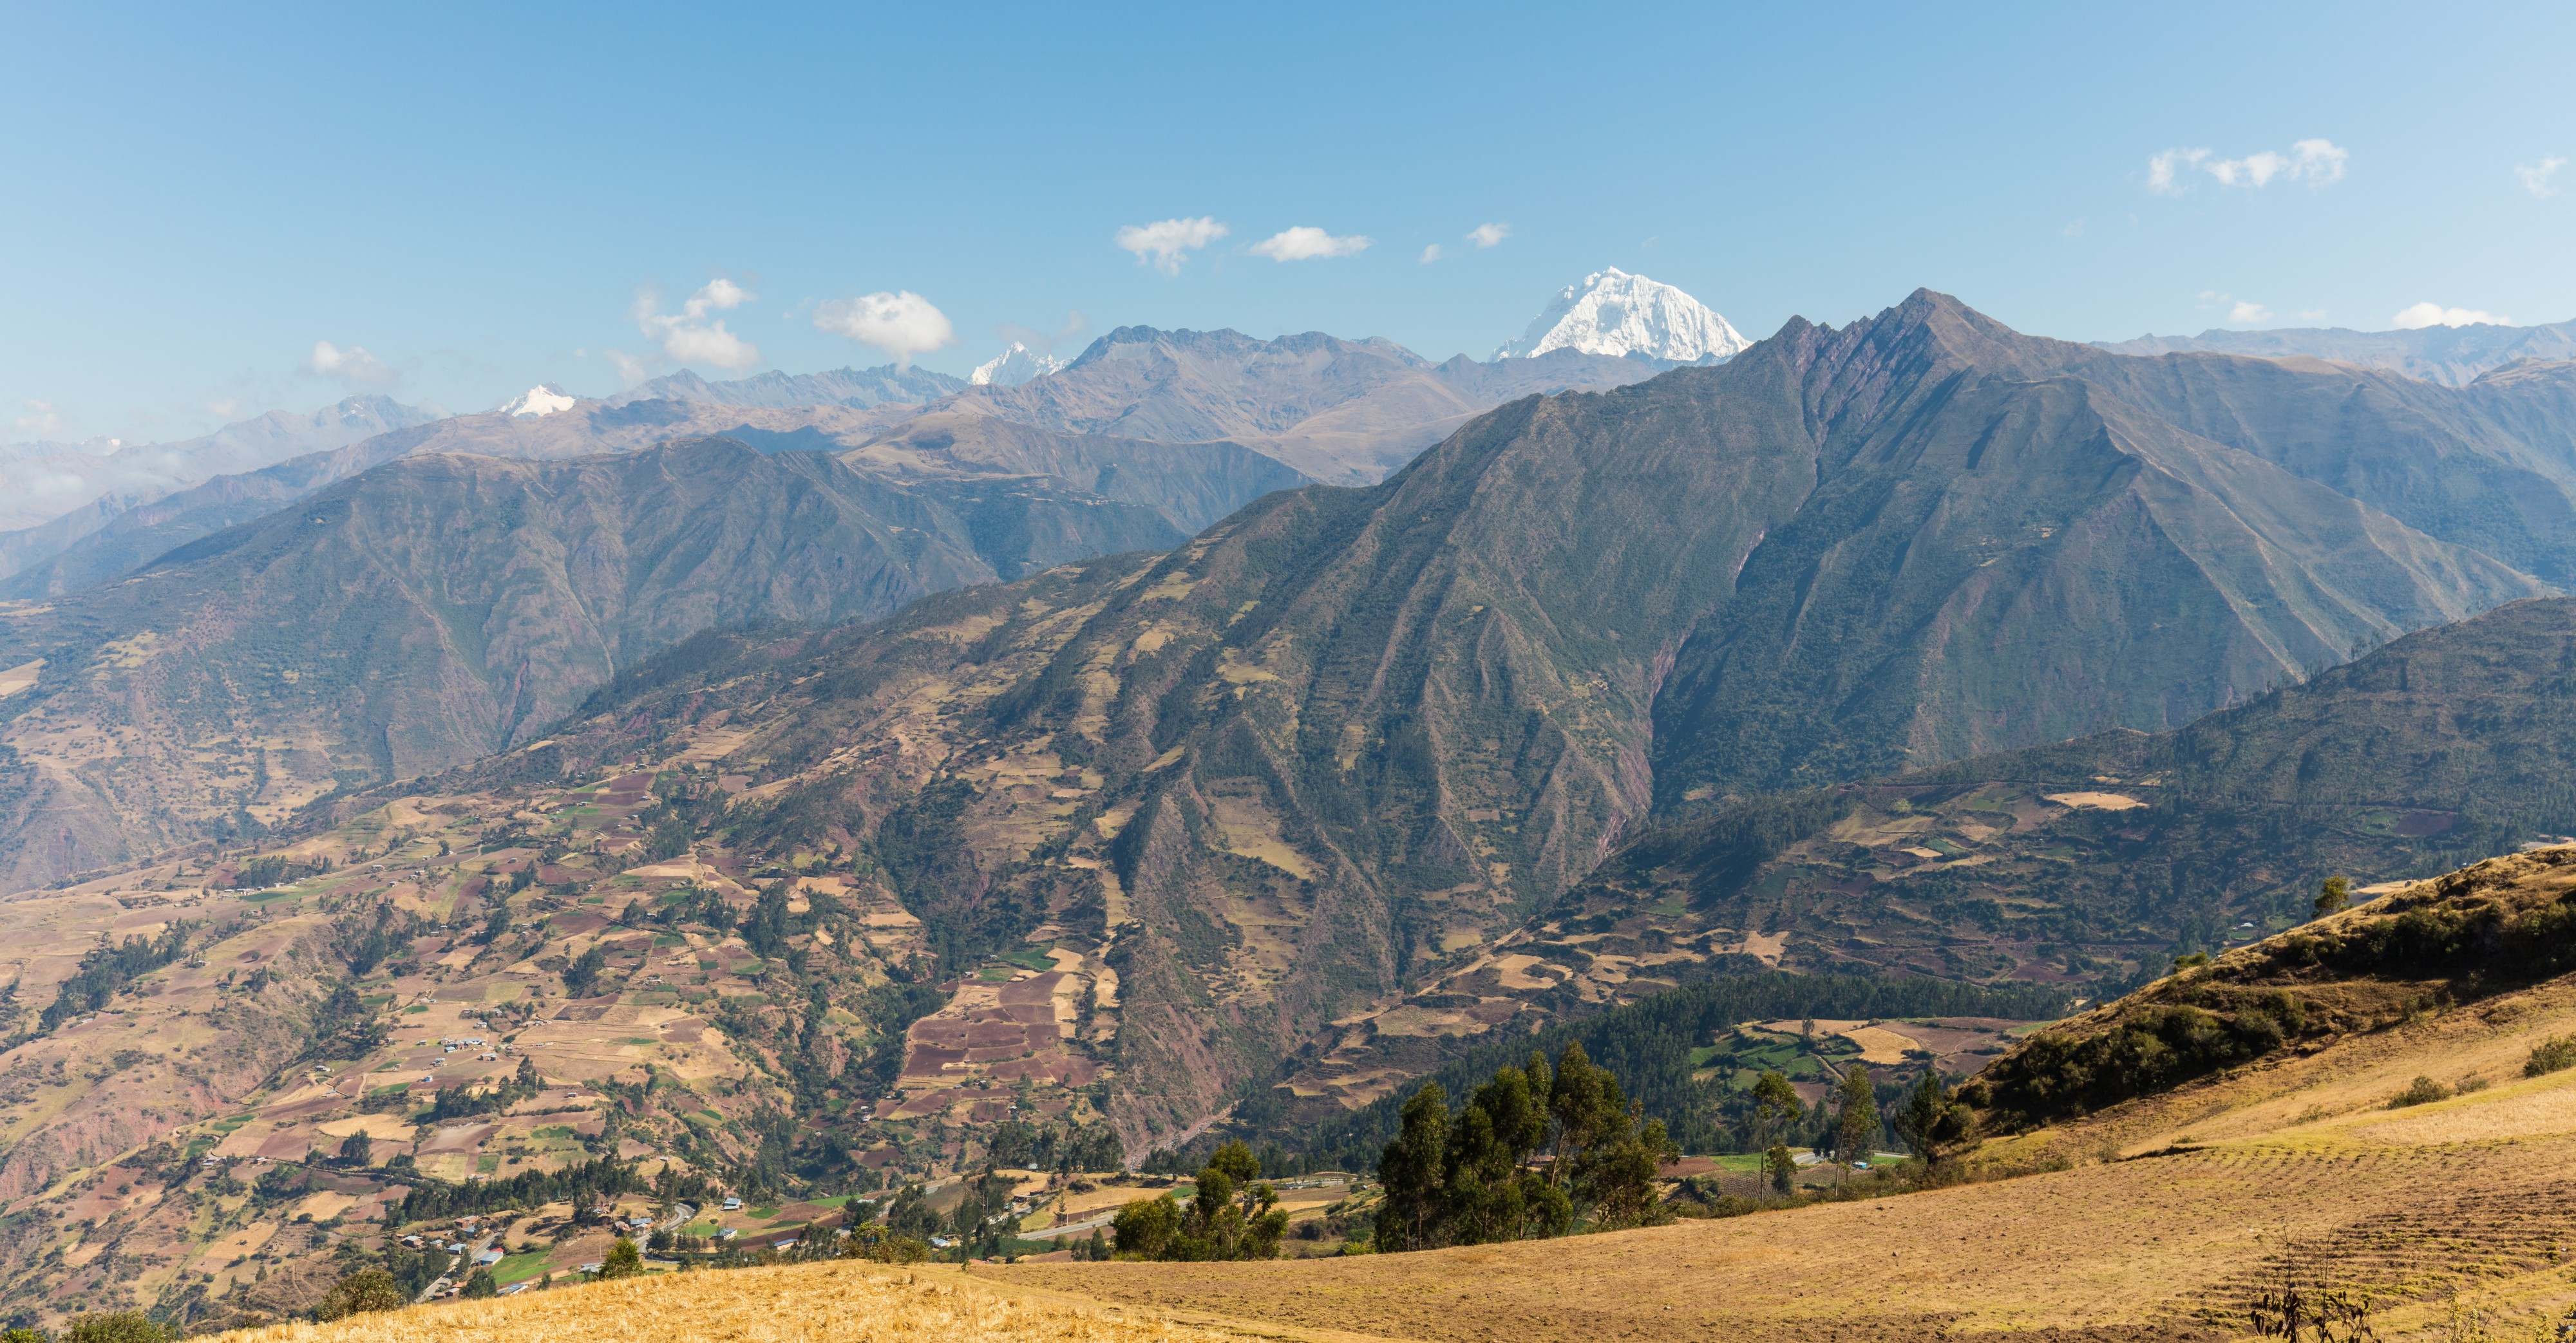 Vista de los Andes, Limatambo, Cuzco, Perú, 2015-07-30, DD 78